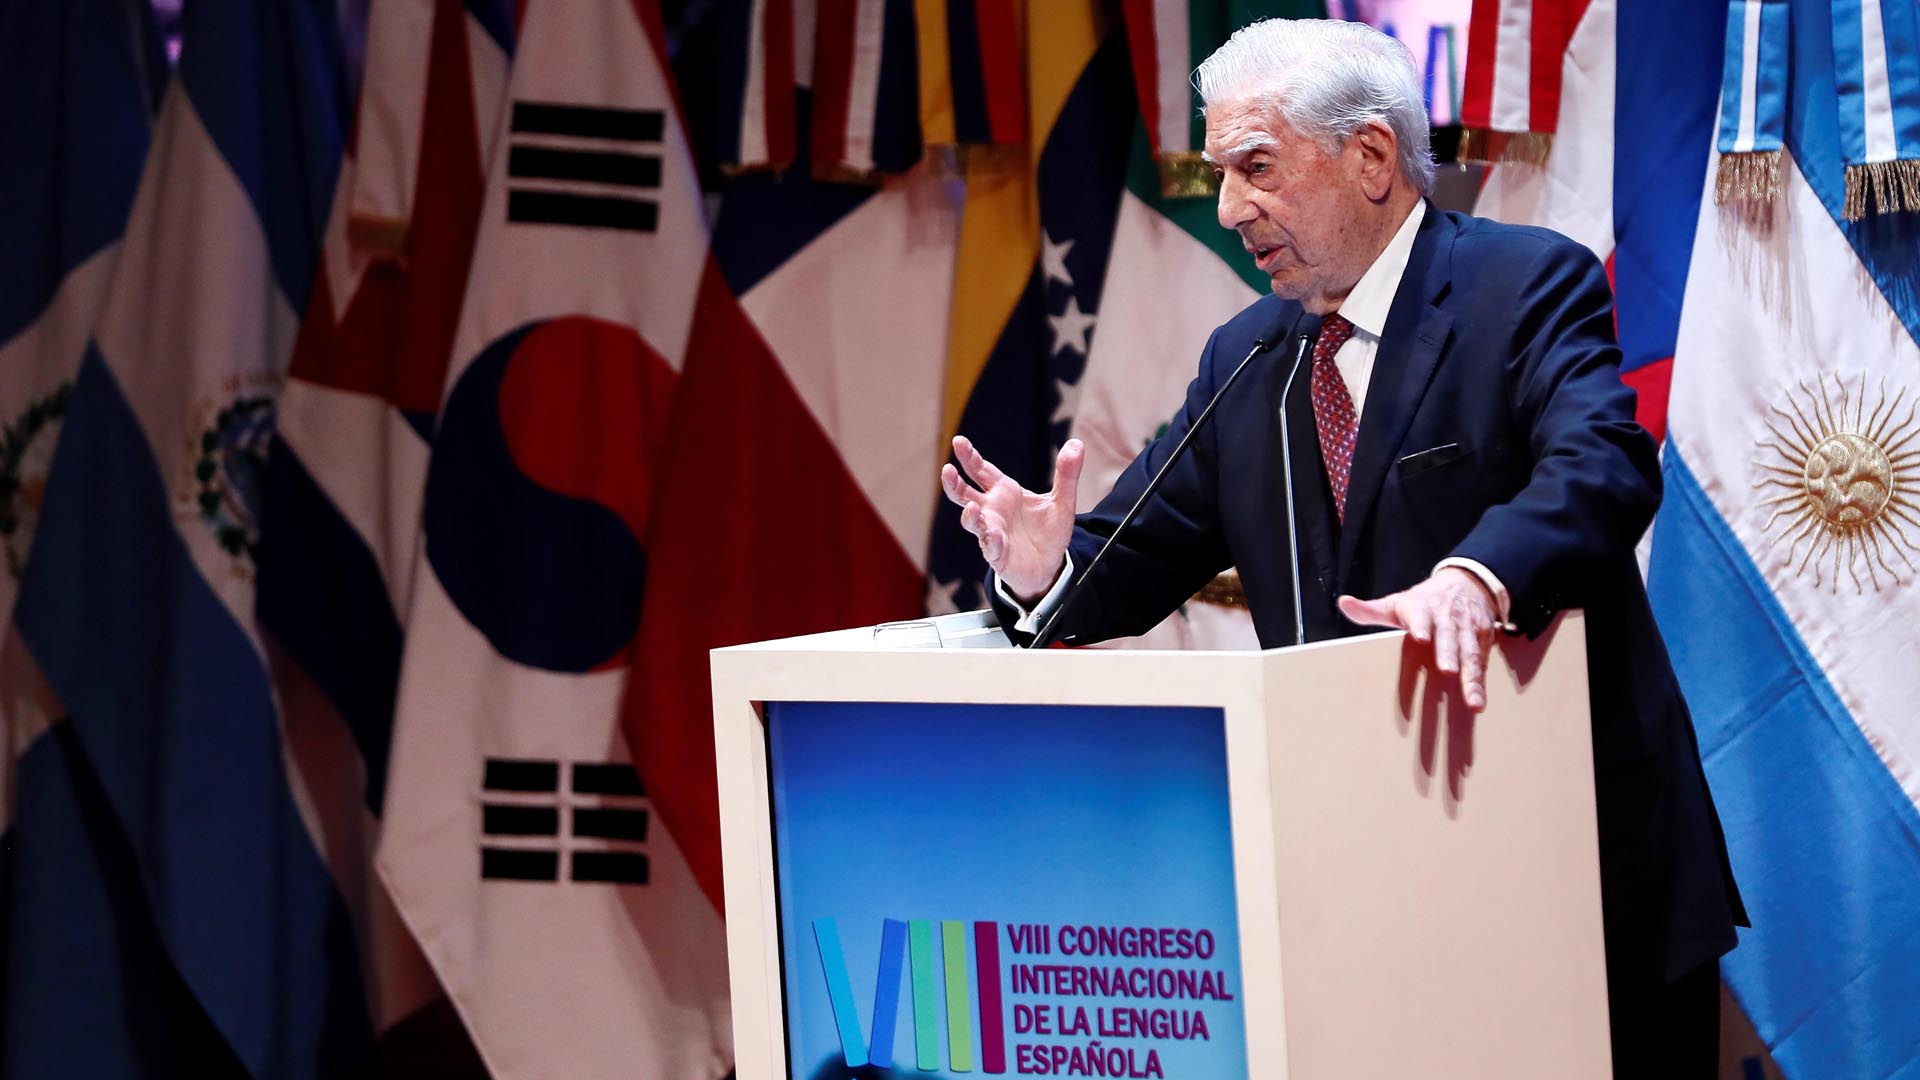 El escritor peruano Mario Vargas Llosa será el gran ausente de esta edición. En la anterior dio el discurso en la sesión inaugural (CILE) (EFE/Mariscal)